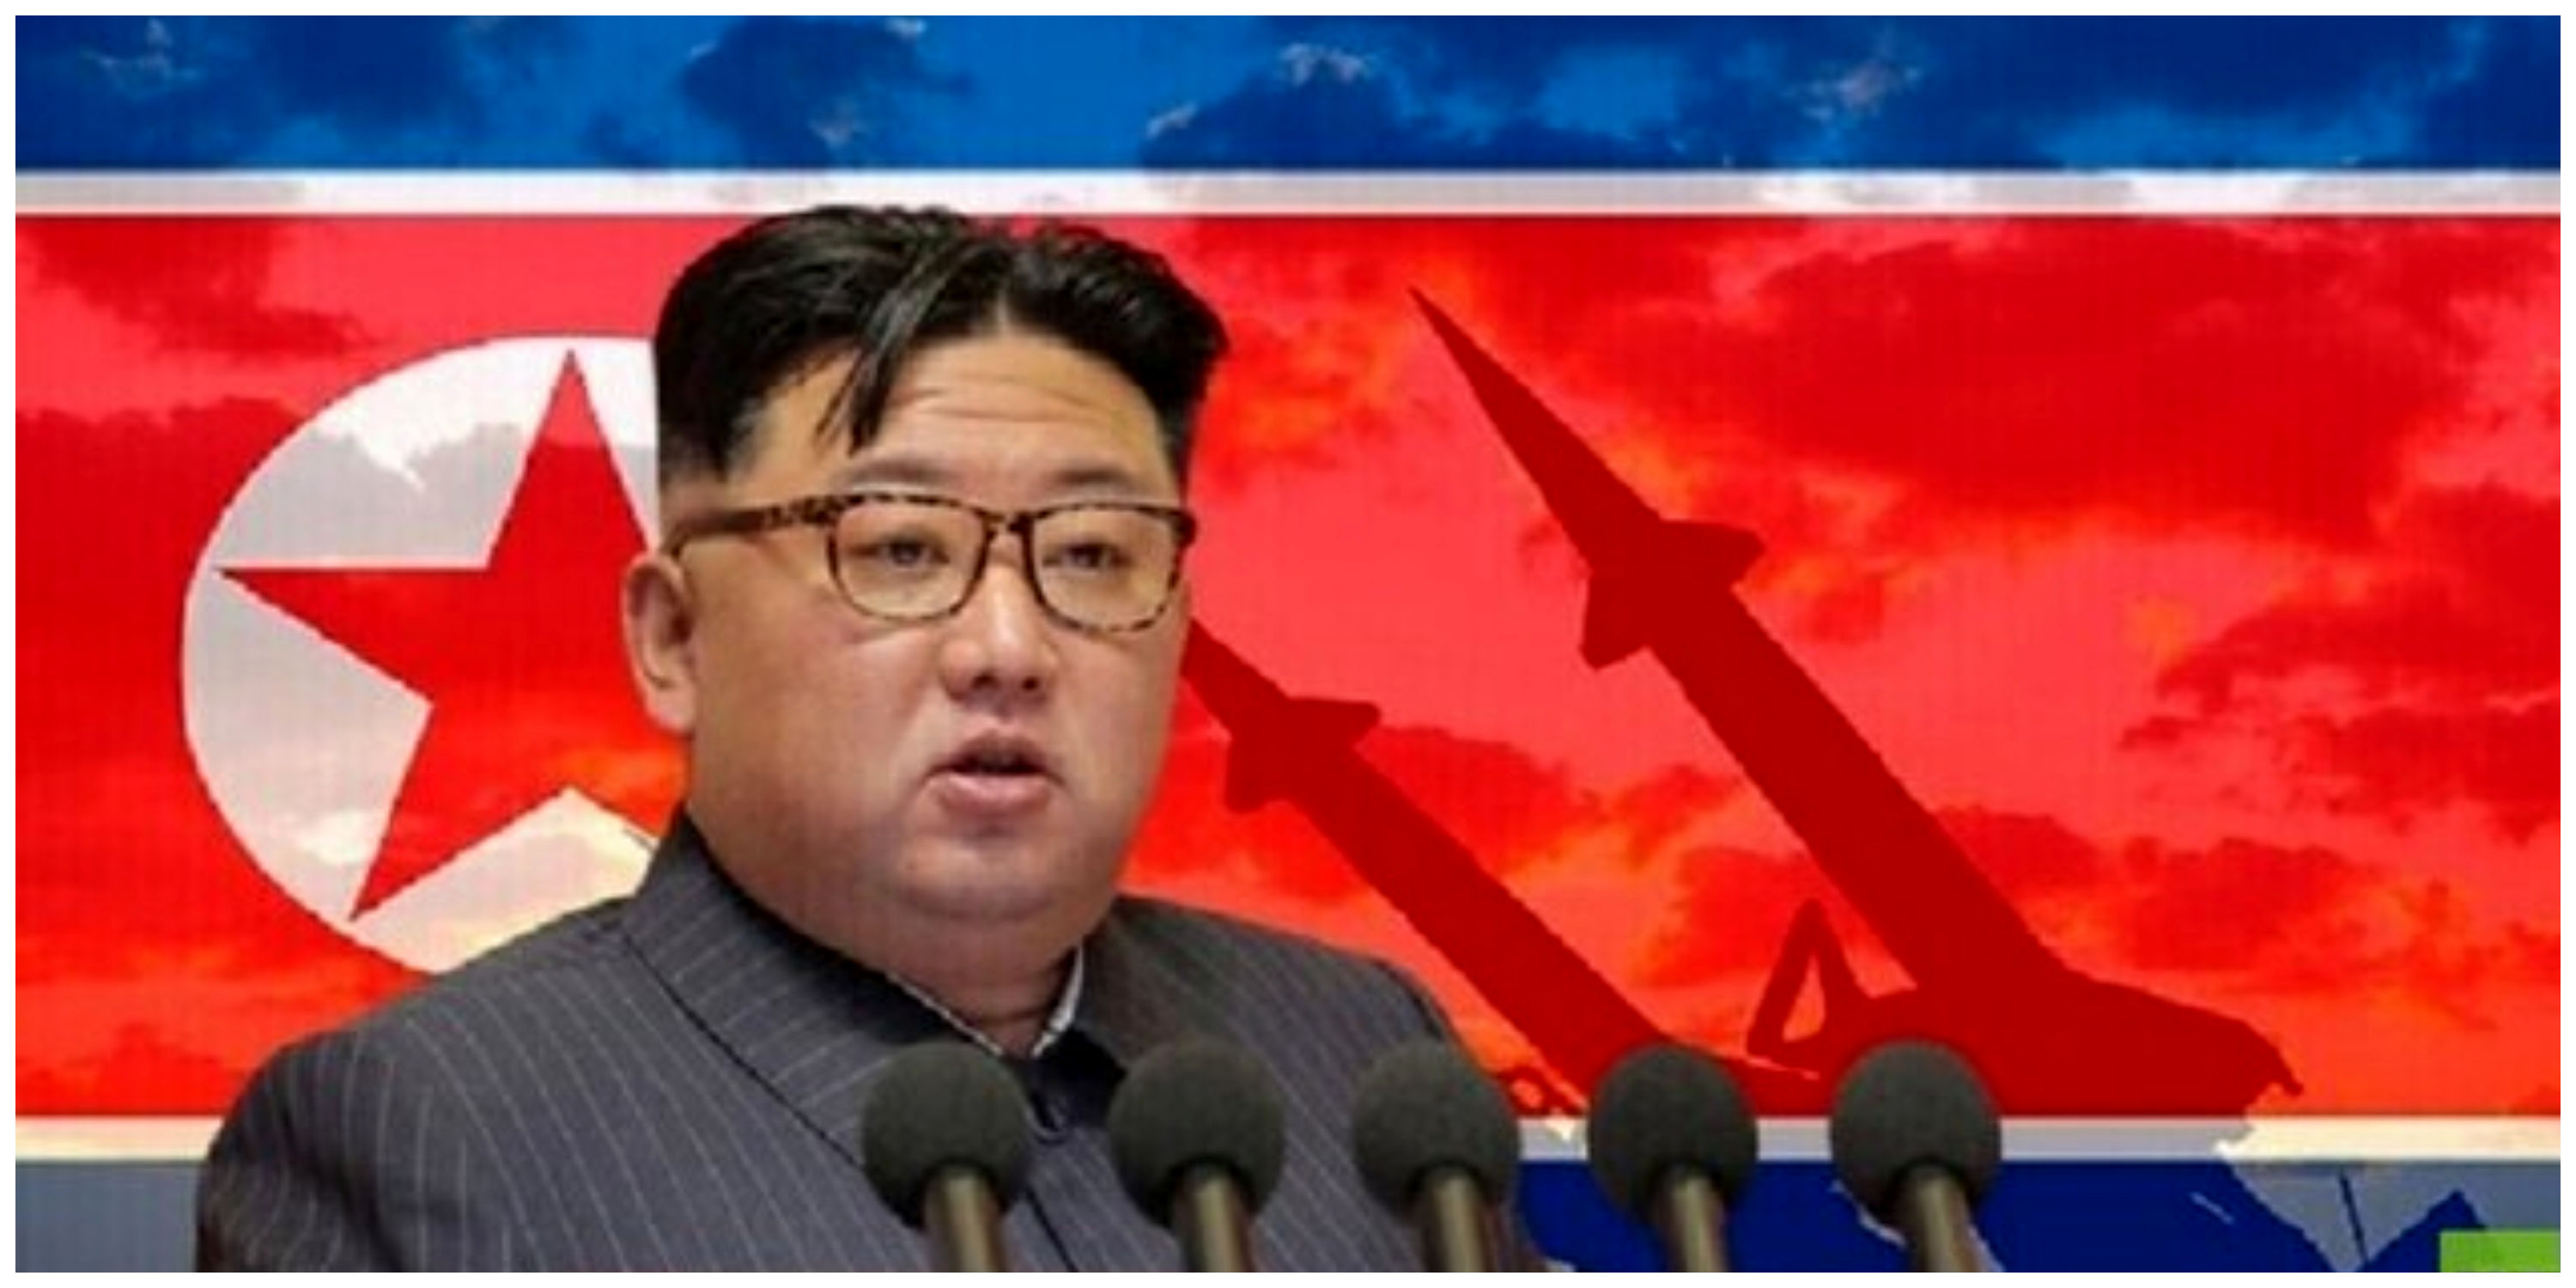 دستور رهبر کره شمالی برای آمادگی جنگی کشورش